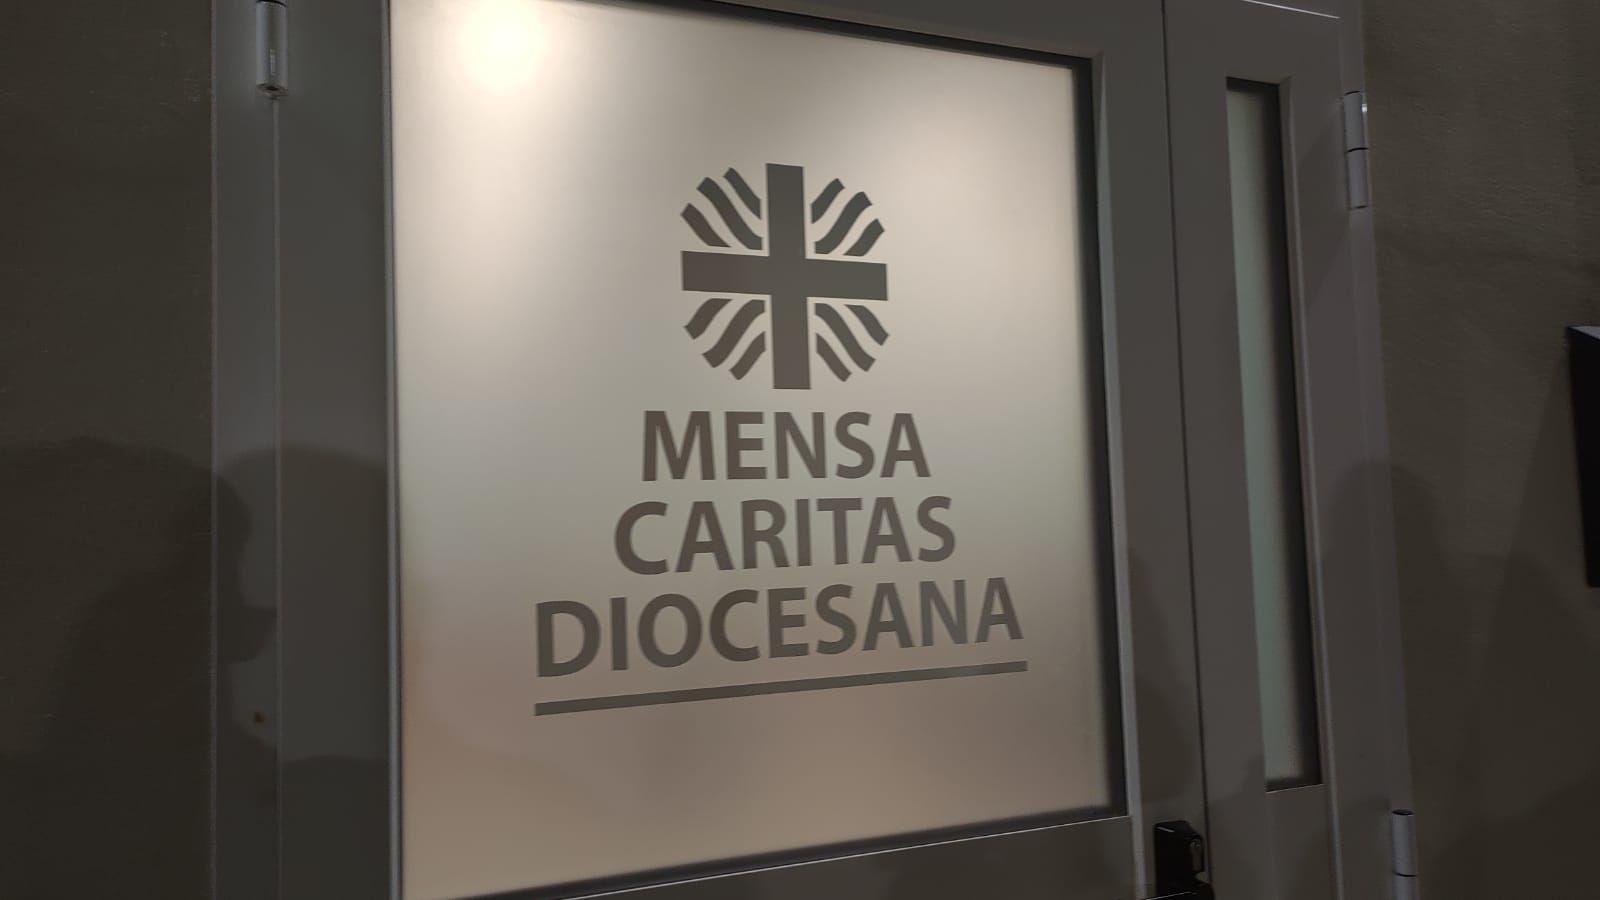 La nuova mensa Caritas a Lamezia per «promuovere la dignità» in tempi di pandemia – INTERVISTE